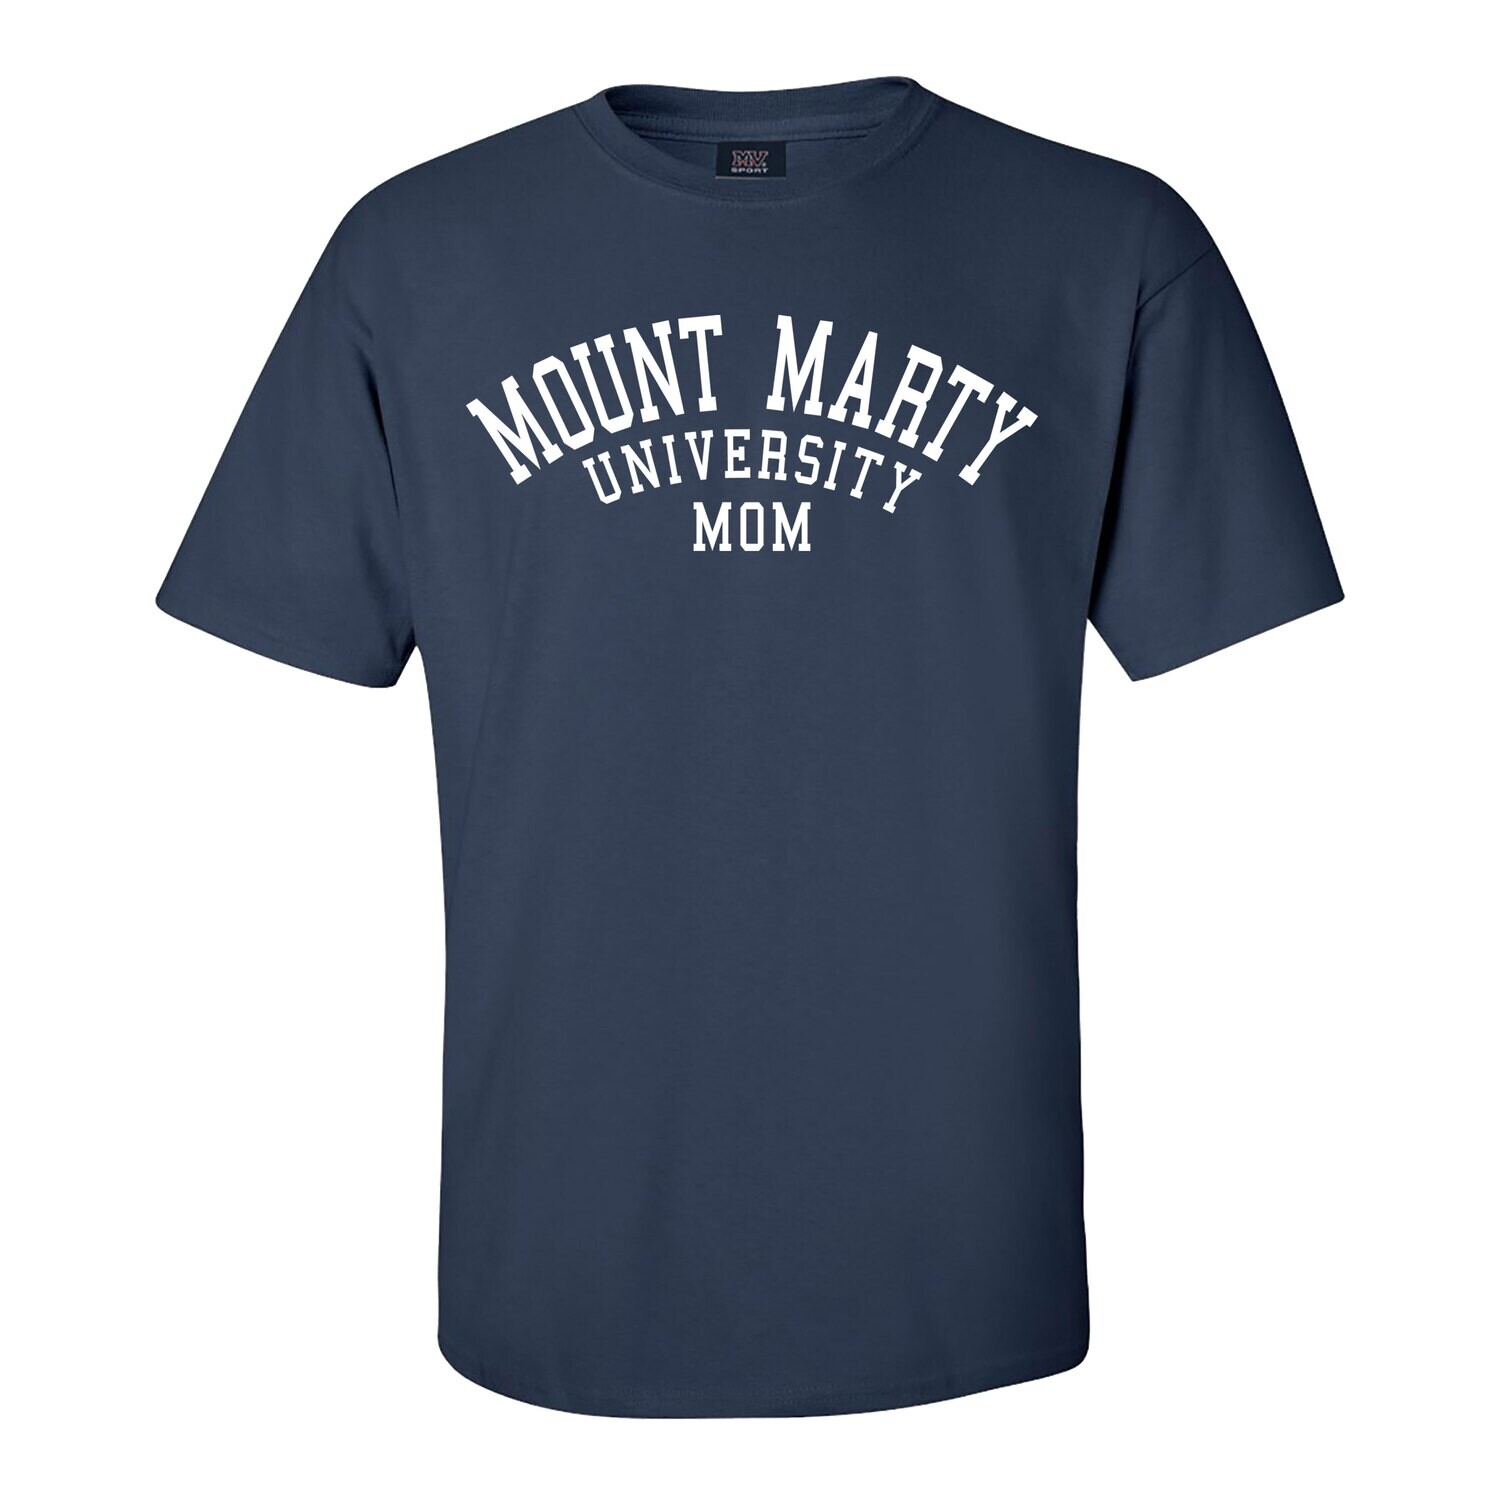 MMU Mom Tshirt